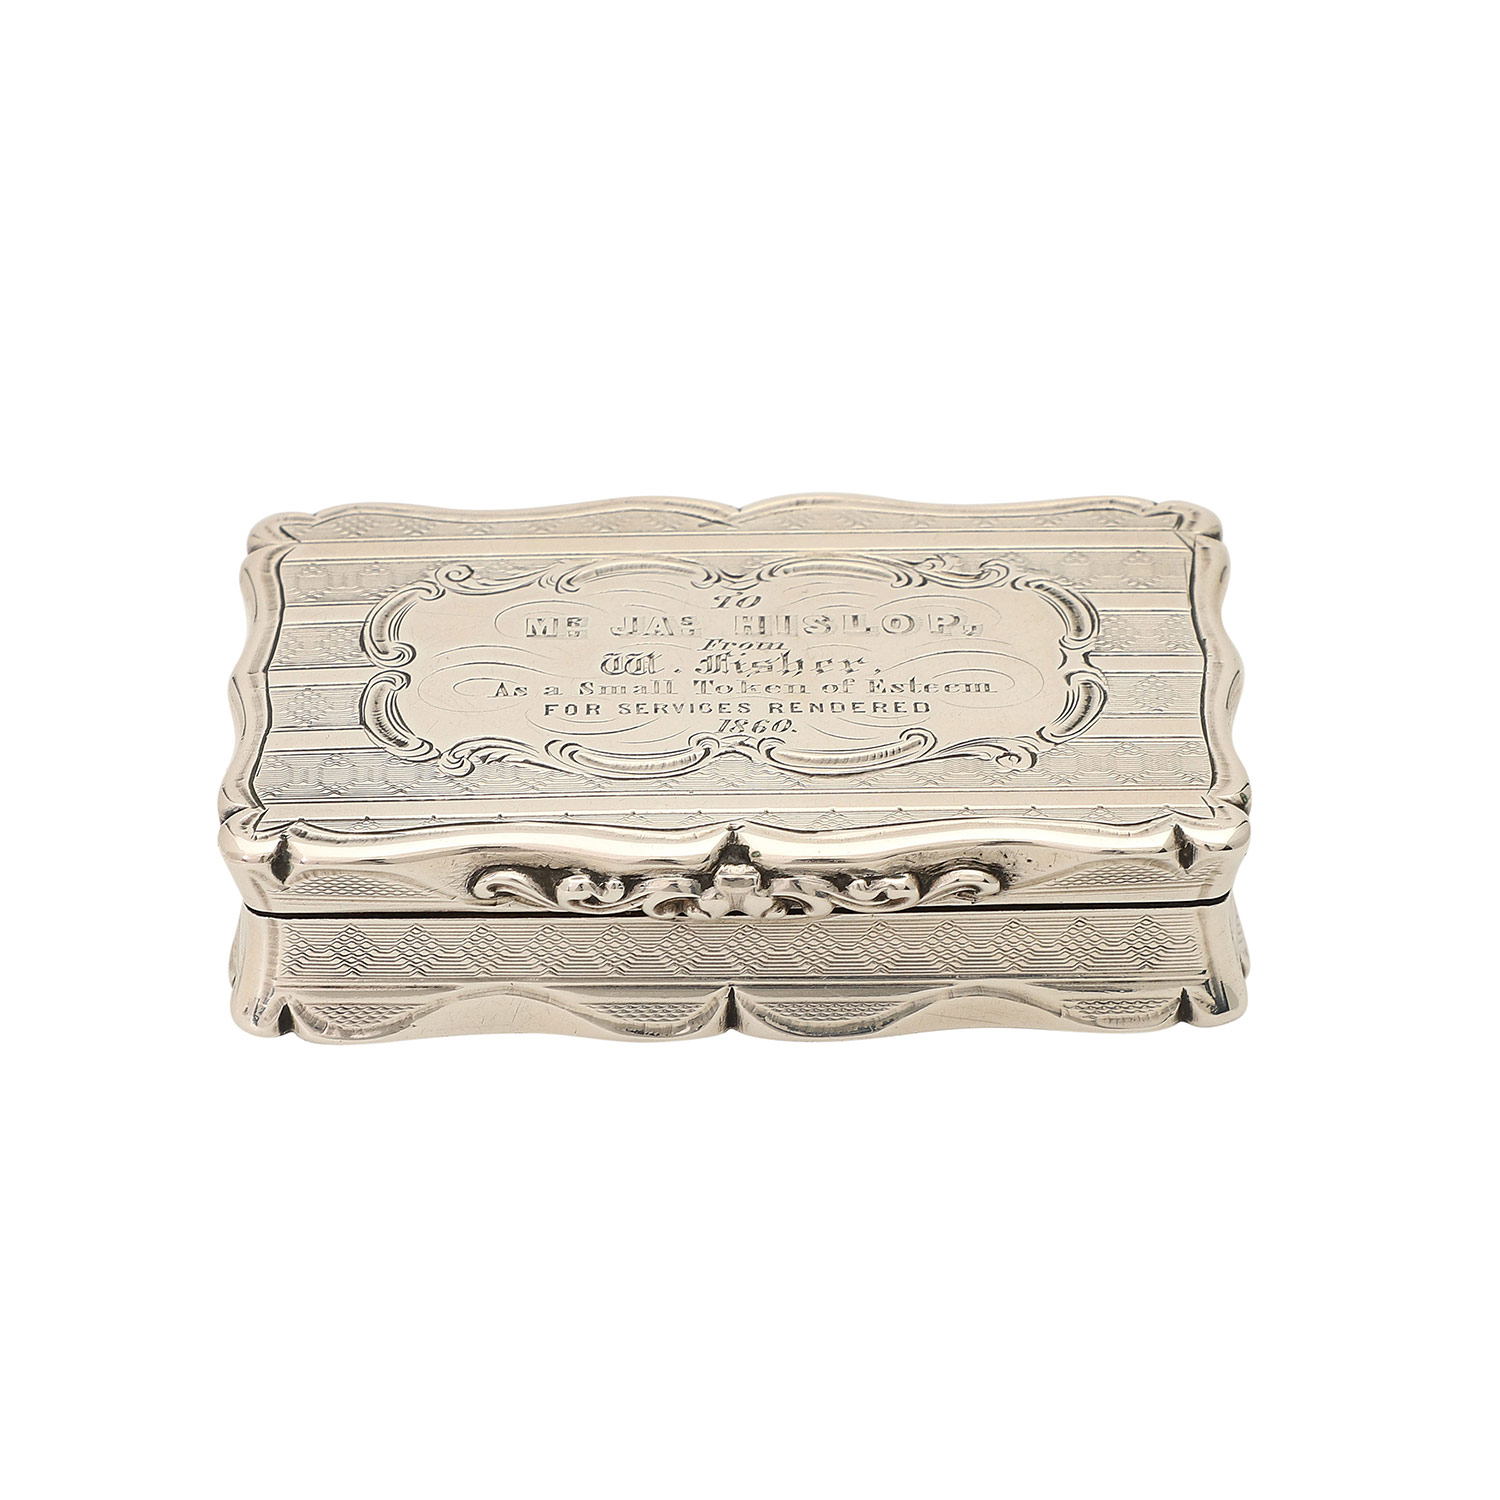 BIRMINGHAM Schnupftabakdose, 925 Silber, 1859.Rechteckiges Döschen mit scharniertem Deckel, mit